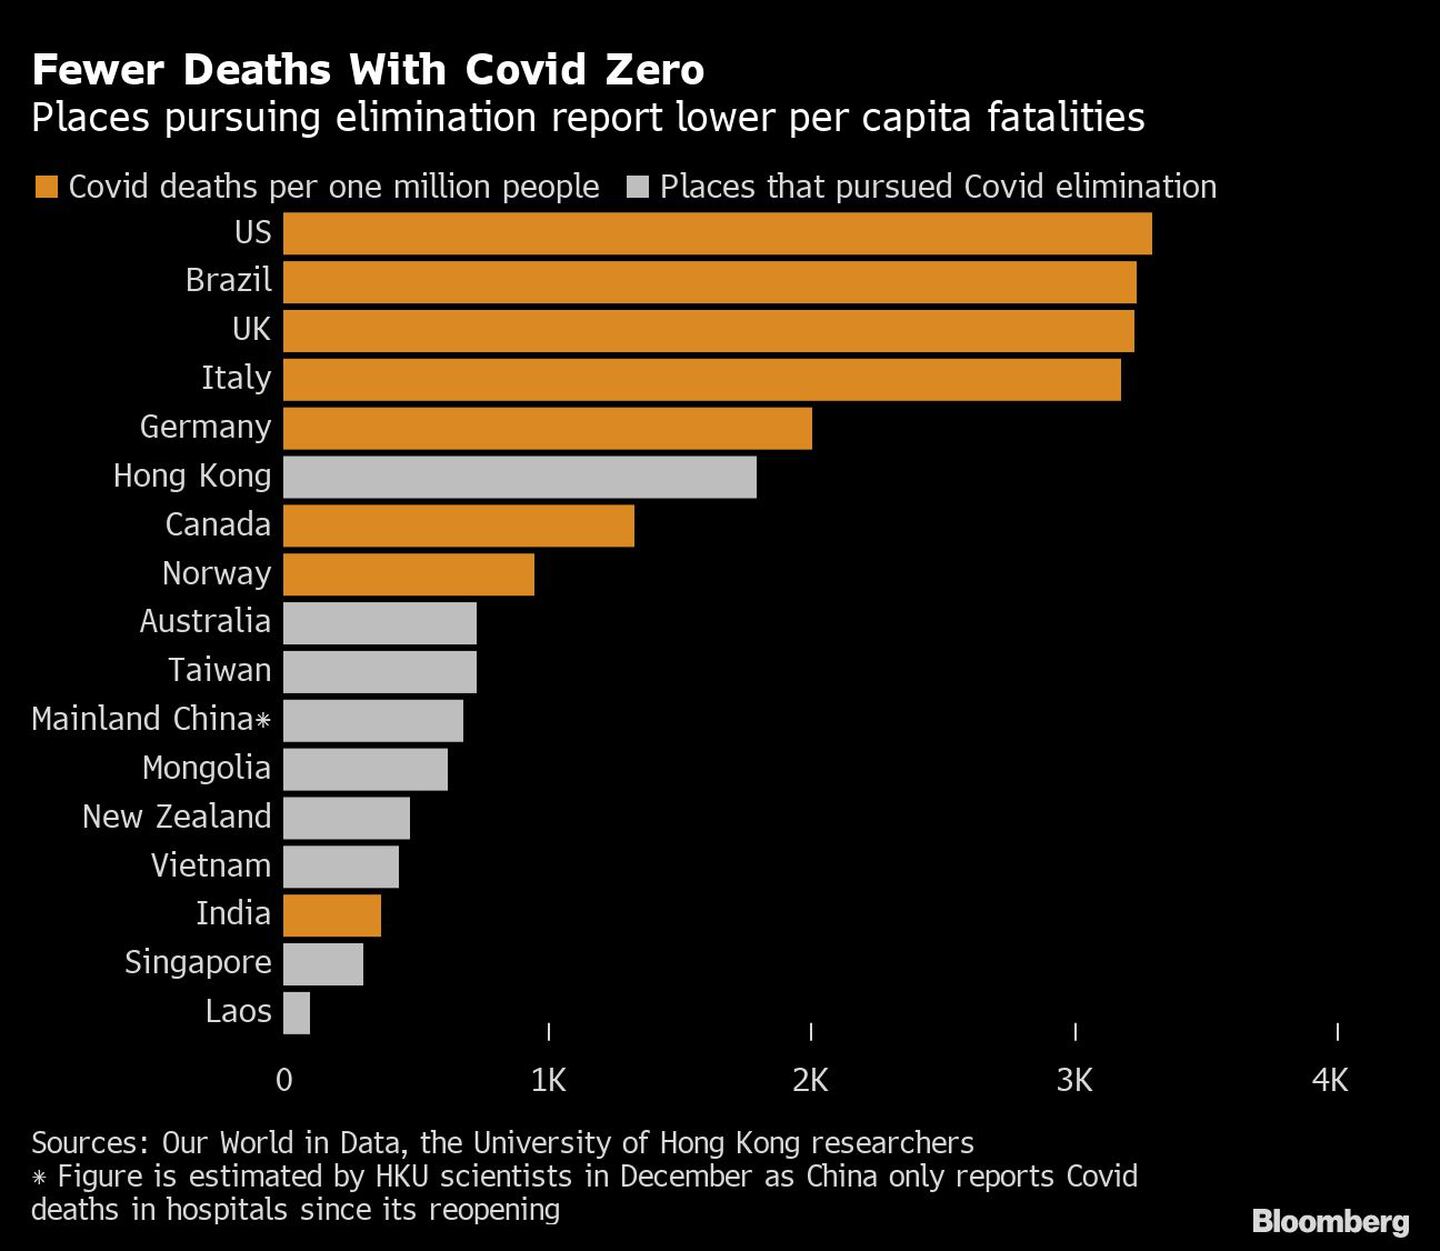 Los lugares que persiguen la eliminación registran menos muertes per cápita.dfd